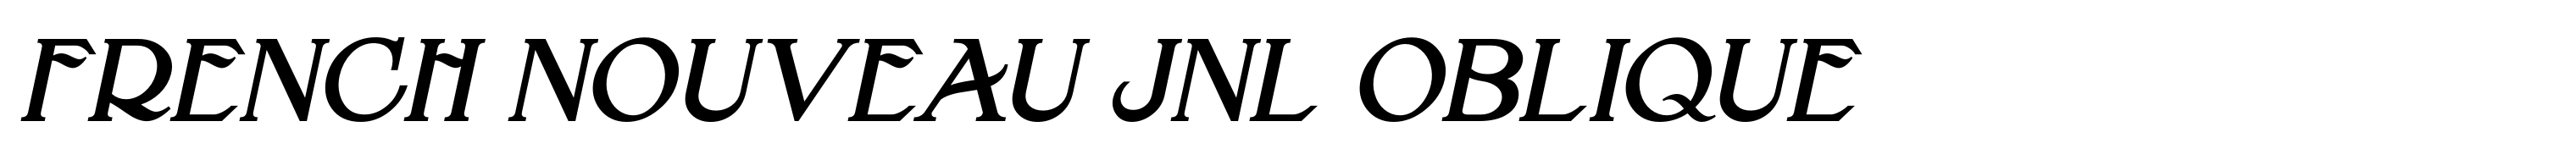 French Nouveau JNL Oblique